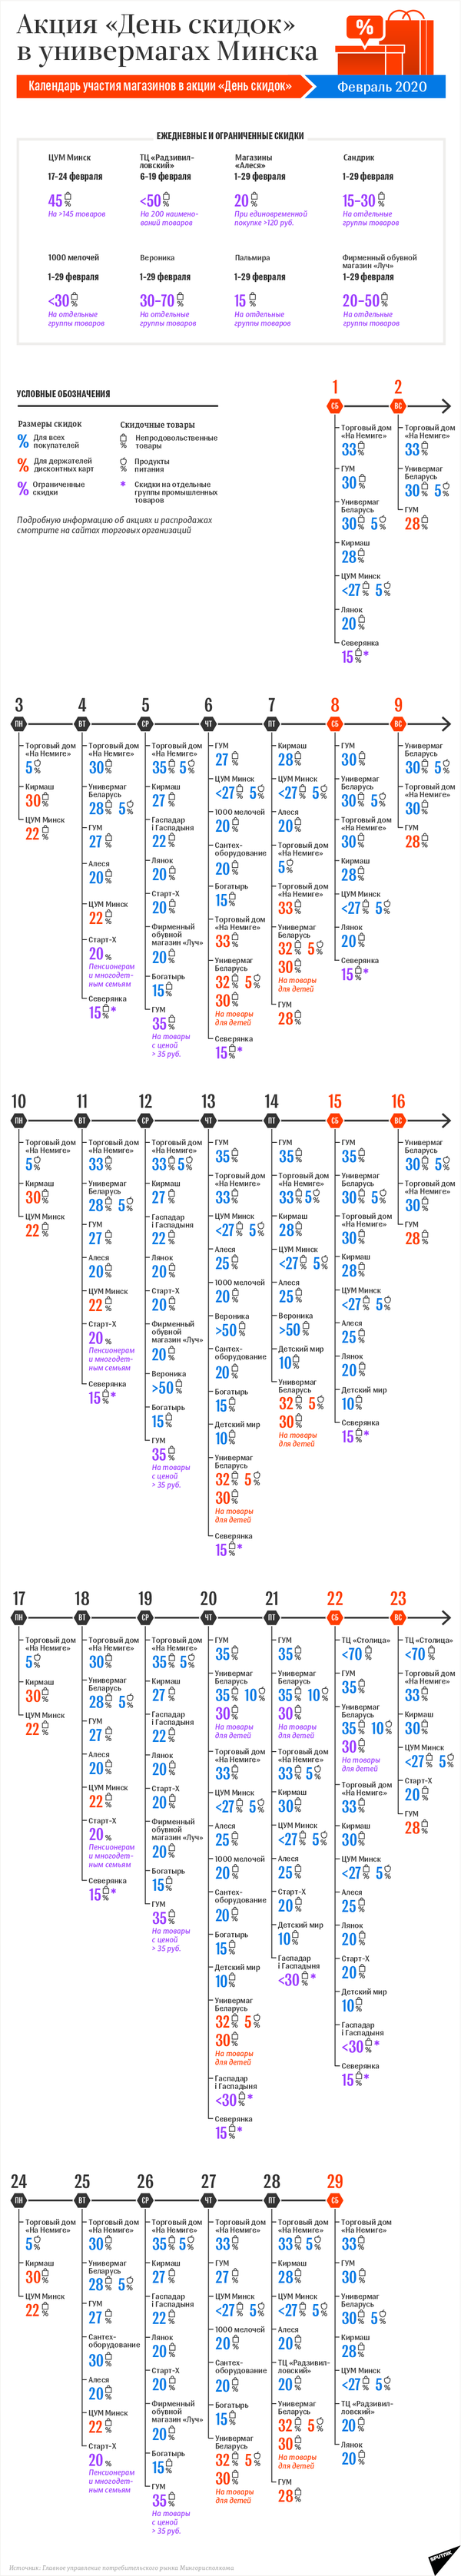 Календарь акции День скидок в Минске: февраль-2020 | Инфографика sputnik.by - Sputnik Беларусь